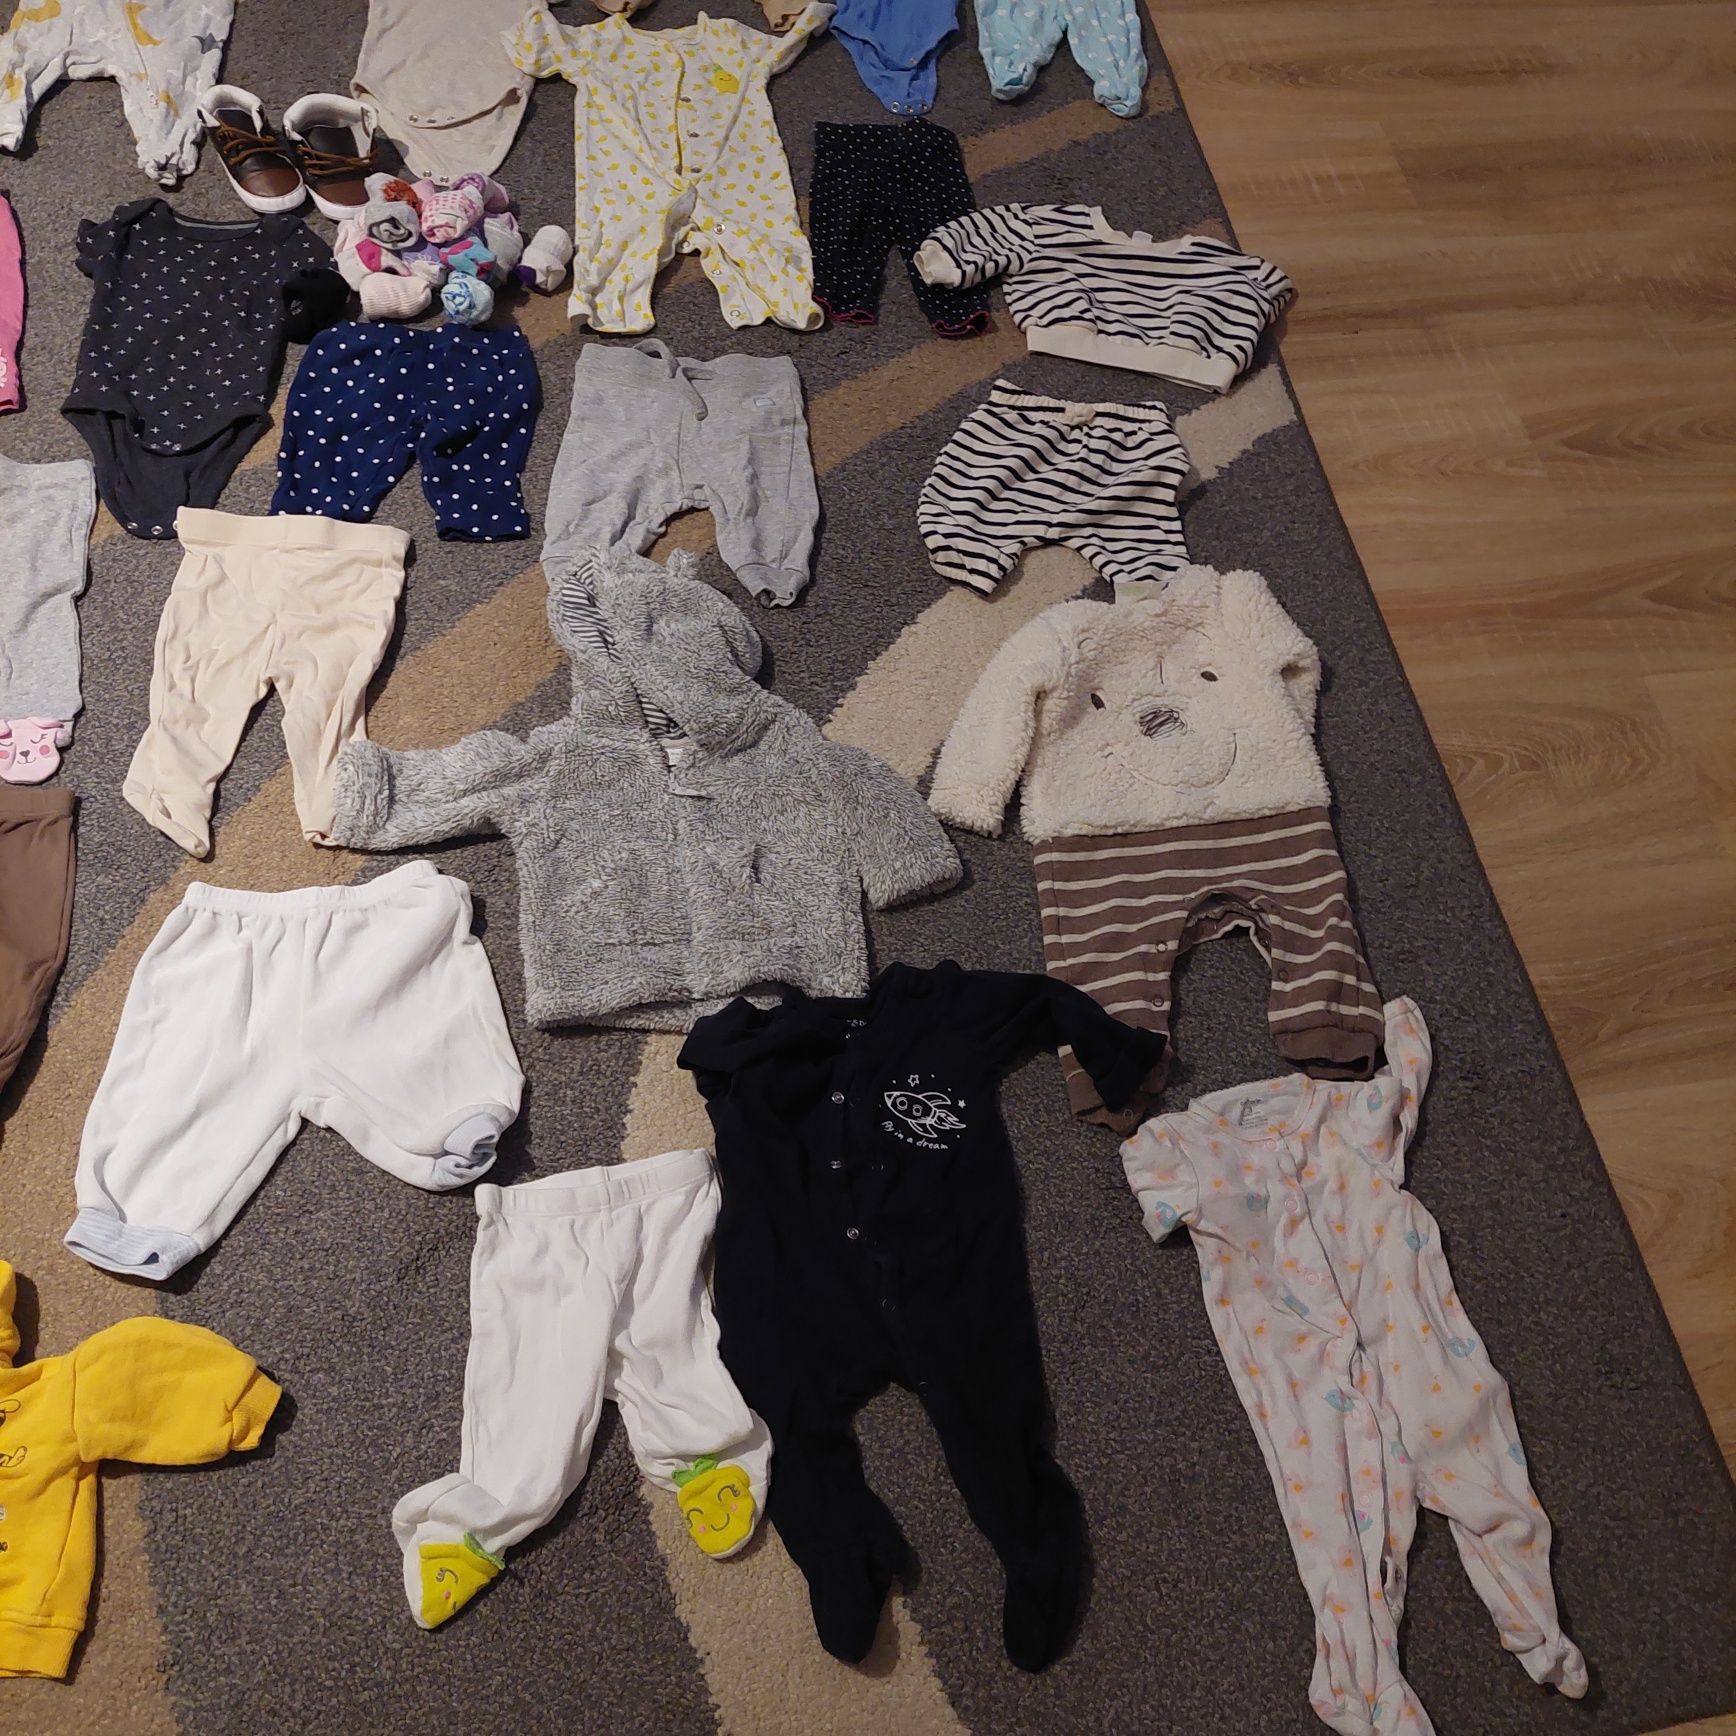 Zestaw ubranek dla dziecka  ubrania dla dziecka w wieku 0-3 miesiące